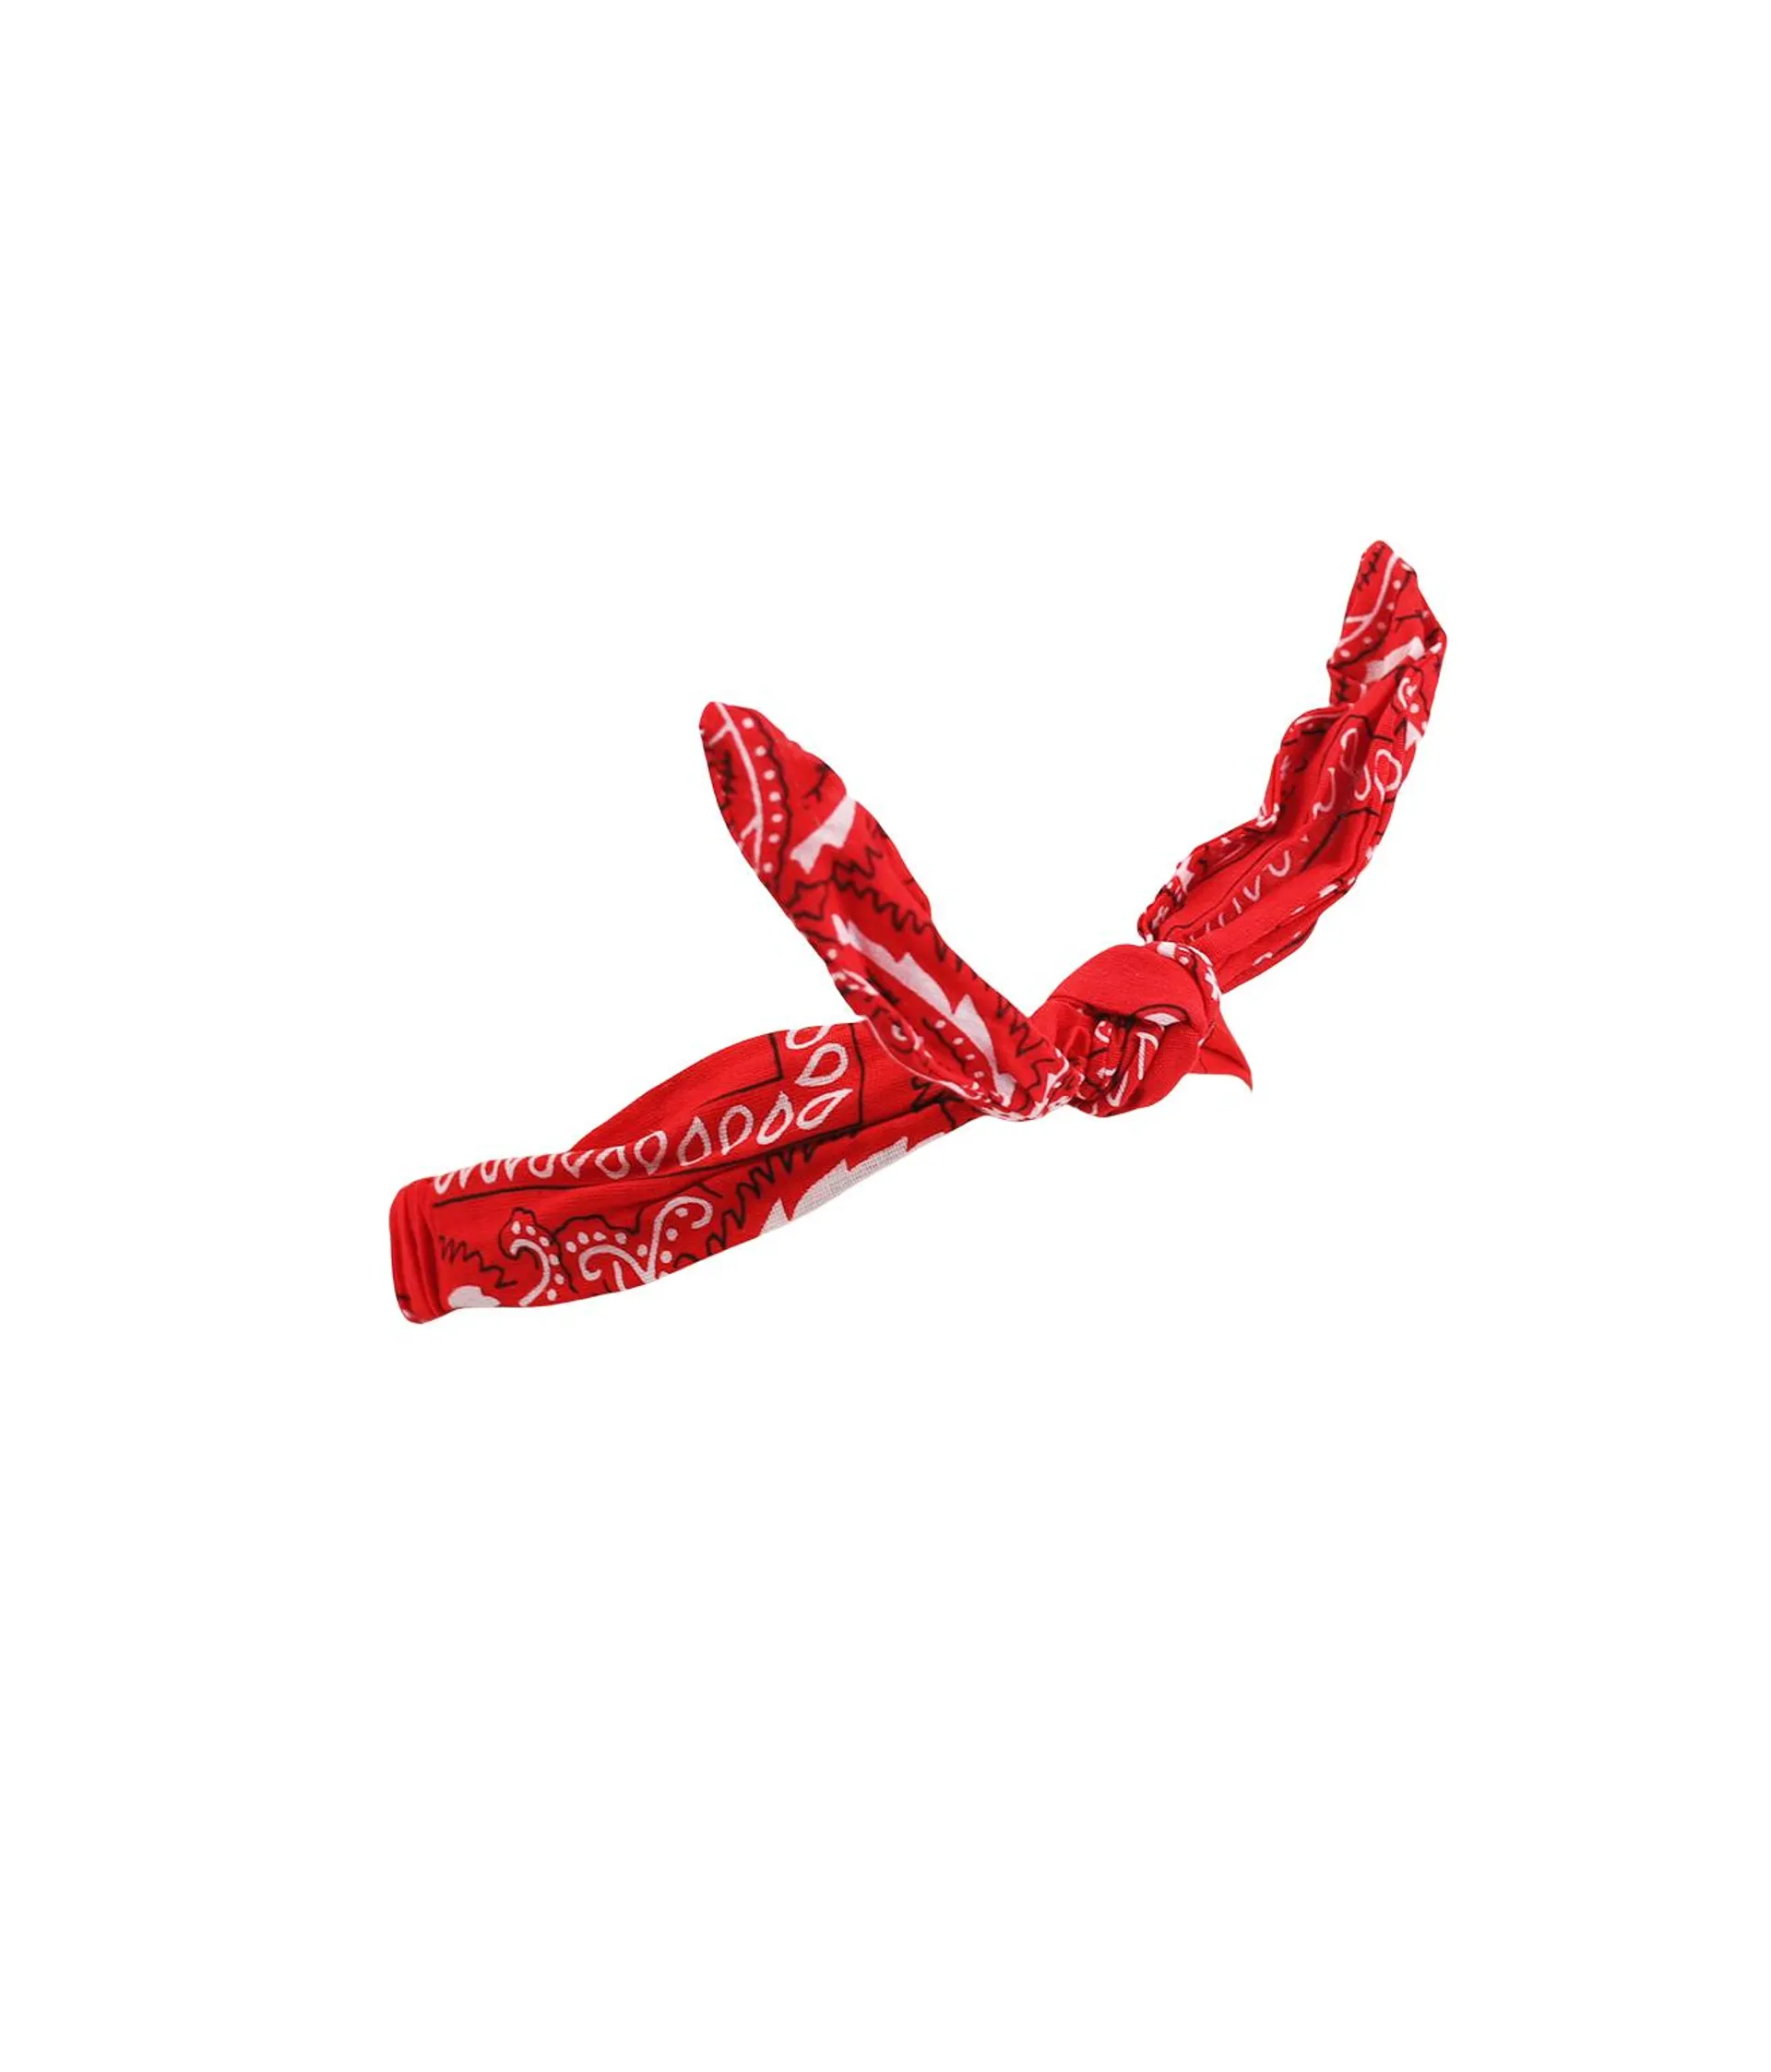 Red Bandana Headband